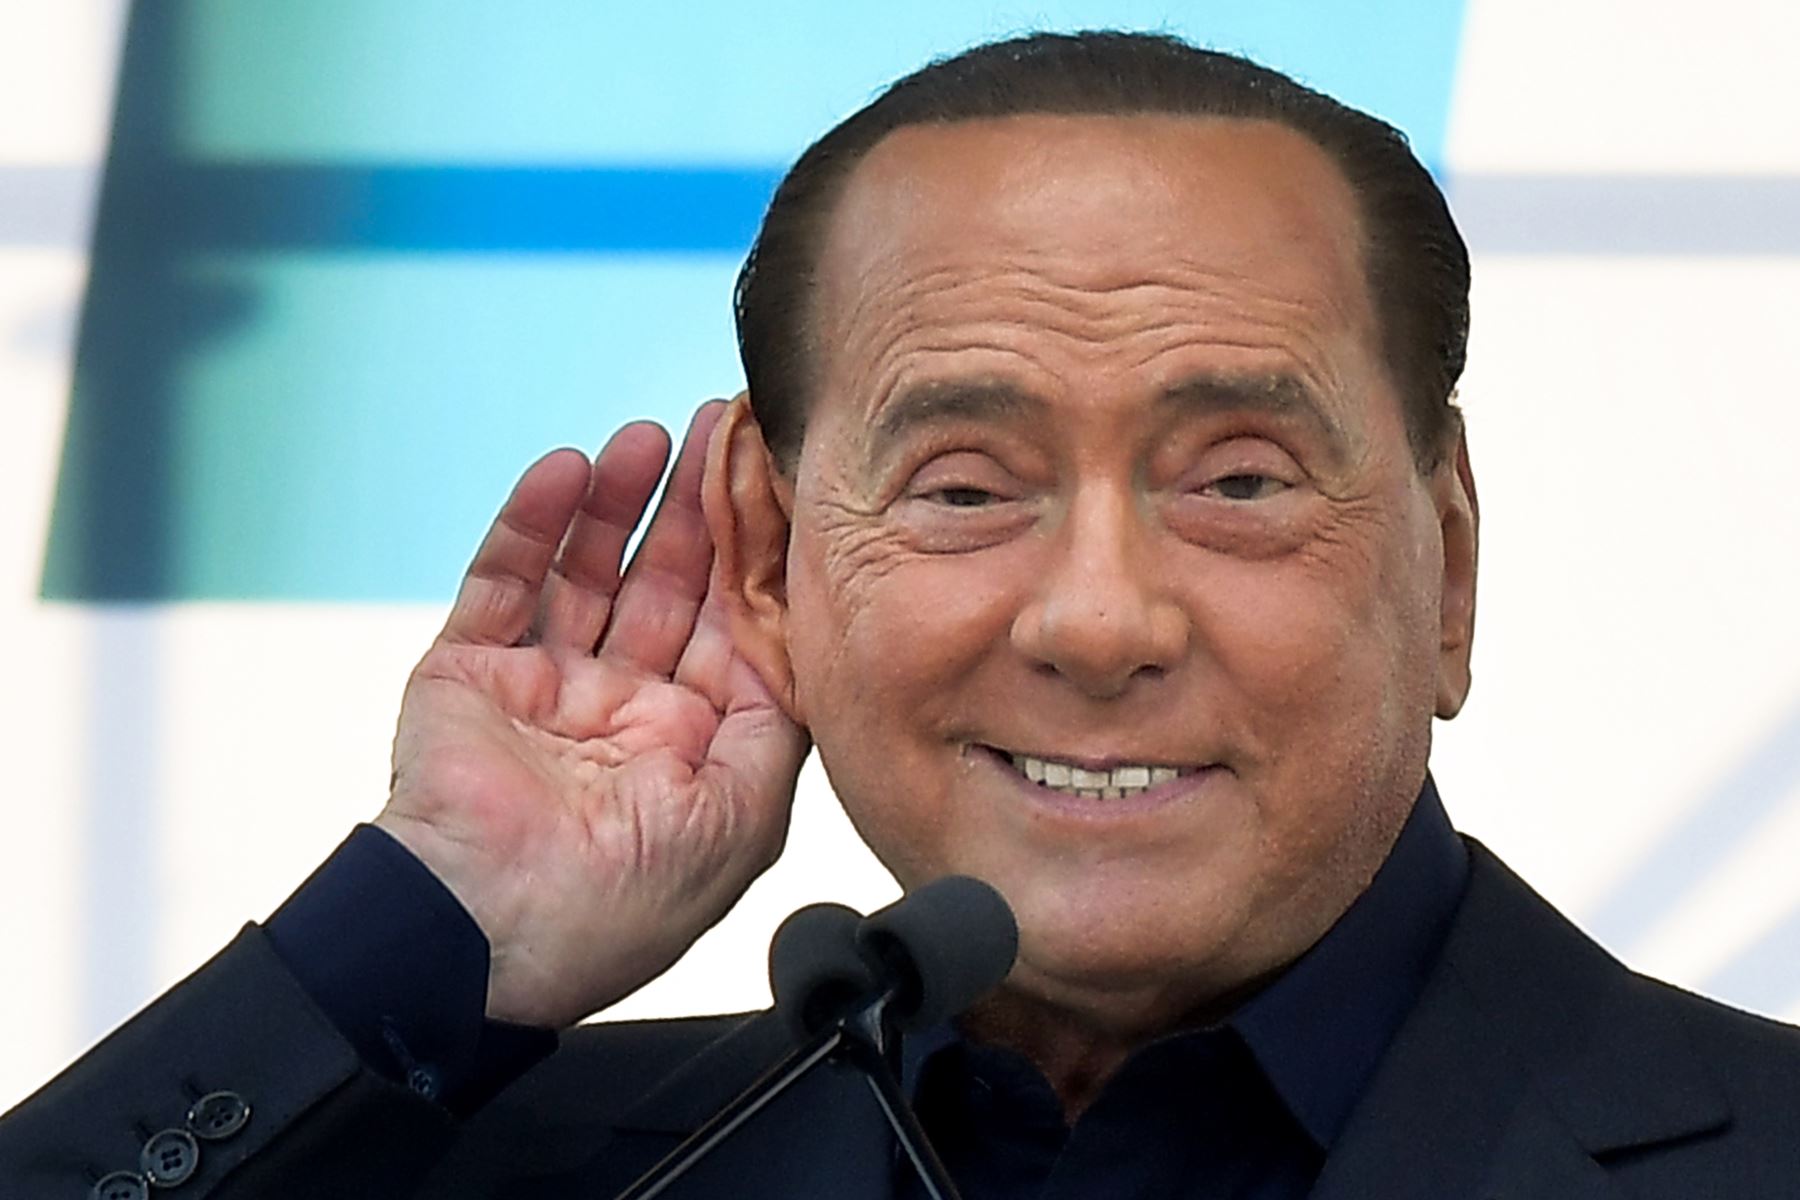 En esta foto de archivo tomada el 19 de octubre de 2019, el líder del partido liberal-conservador italiano Forza Italia, Silvio Berlusconi hace gestos mientras habla durante una manifestación en Roma. Según los medios italianos el 2 de septiembre de 2020, Silvio Berlusconi dio positivo por covid-19. Foto: AFP